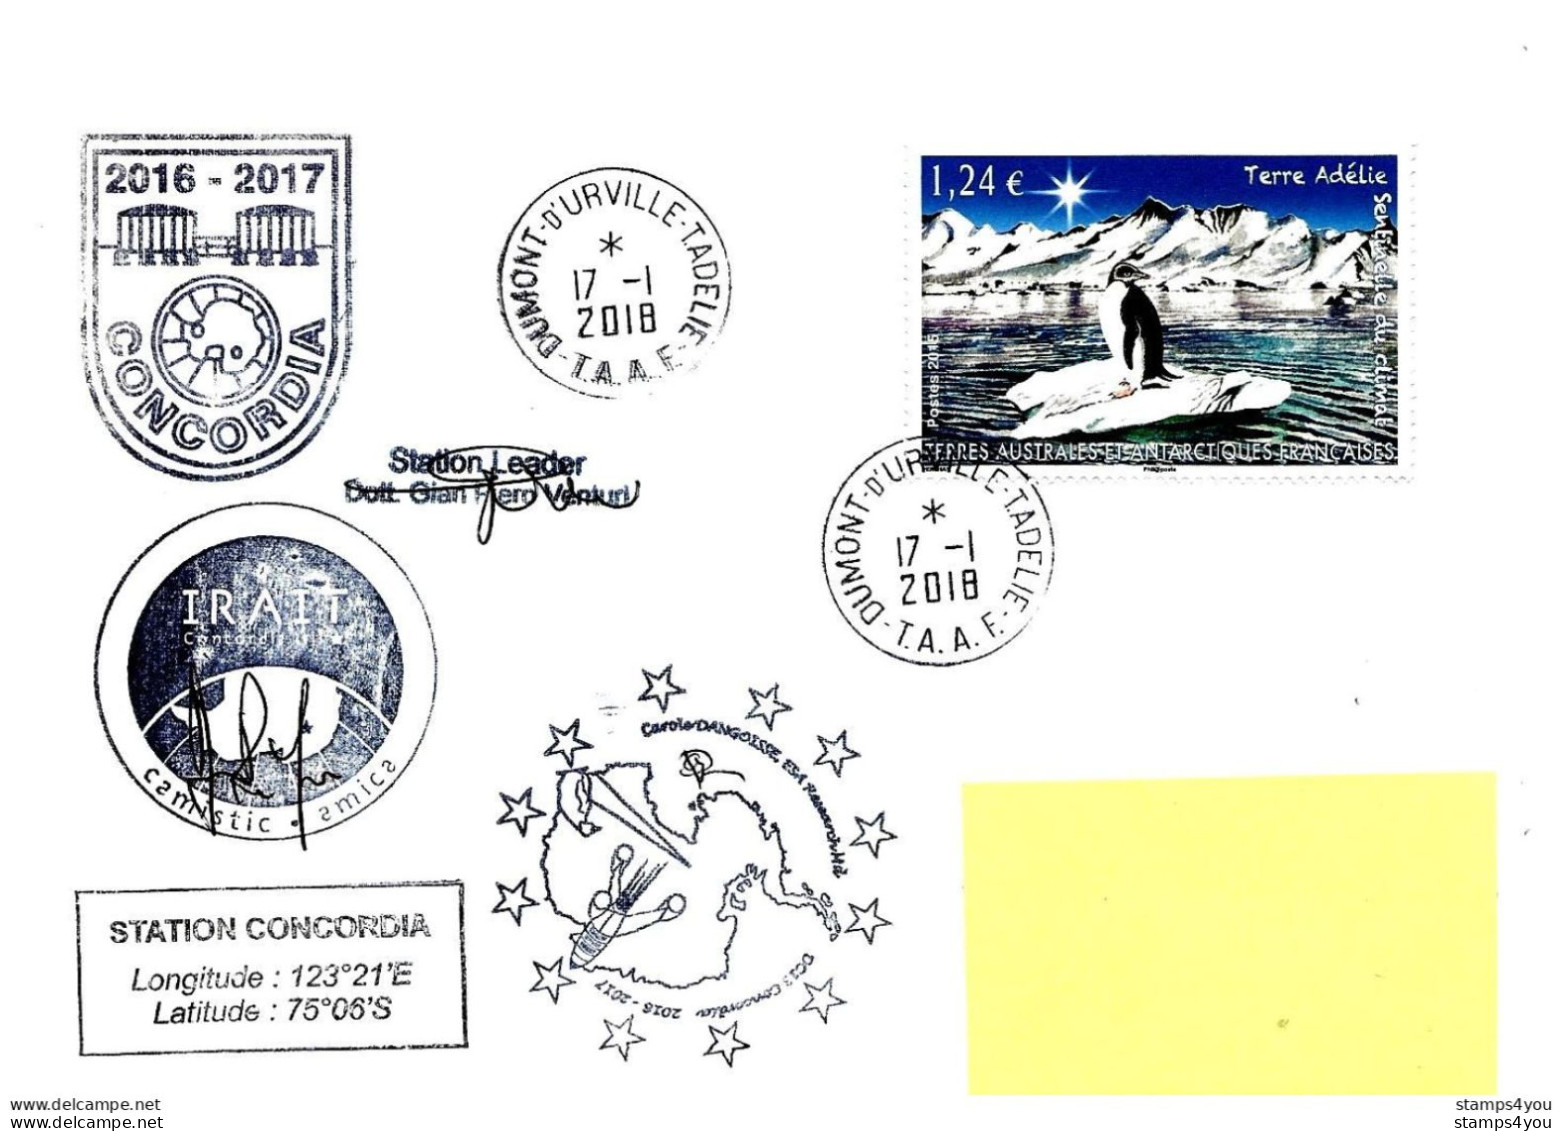 480 - 48 - Enveloppe TAAF Terre Adélie Base Franco-italienne Concordia - Cachets Illustrés  2018 - Bases Antarctiques